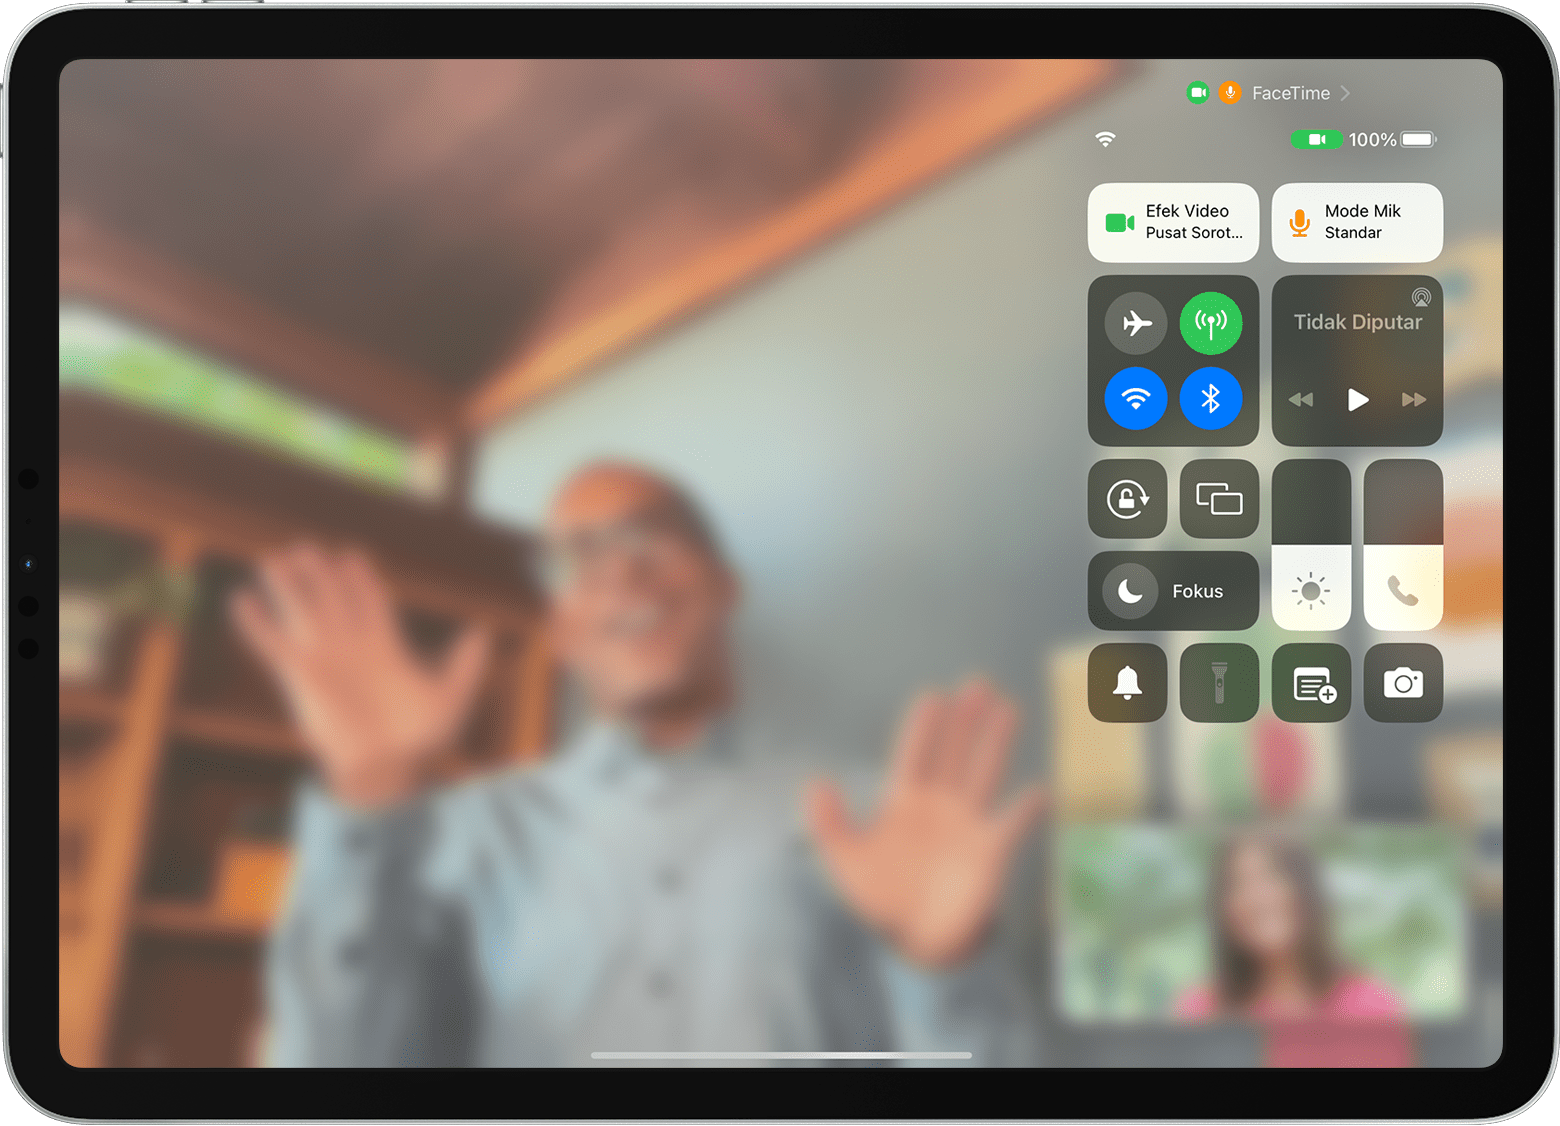 Layar iPad menampilkan panggilan FaceTime dengan Pusat Kontrol terlihat, termasuk tombol Efek Video